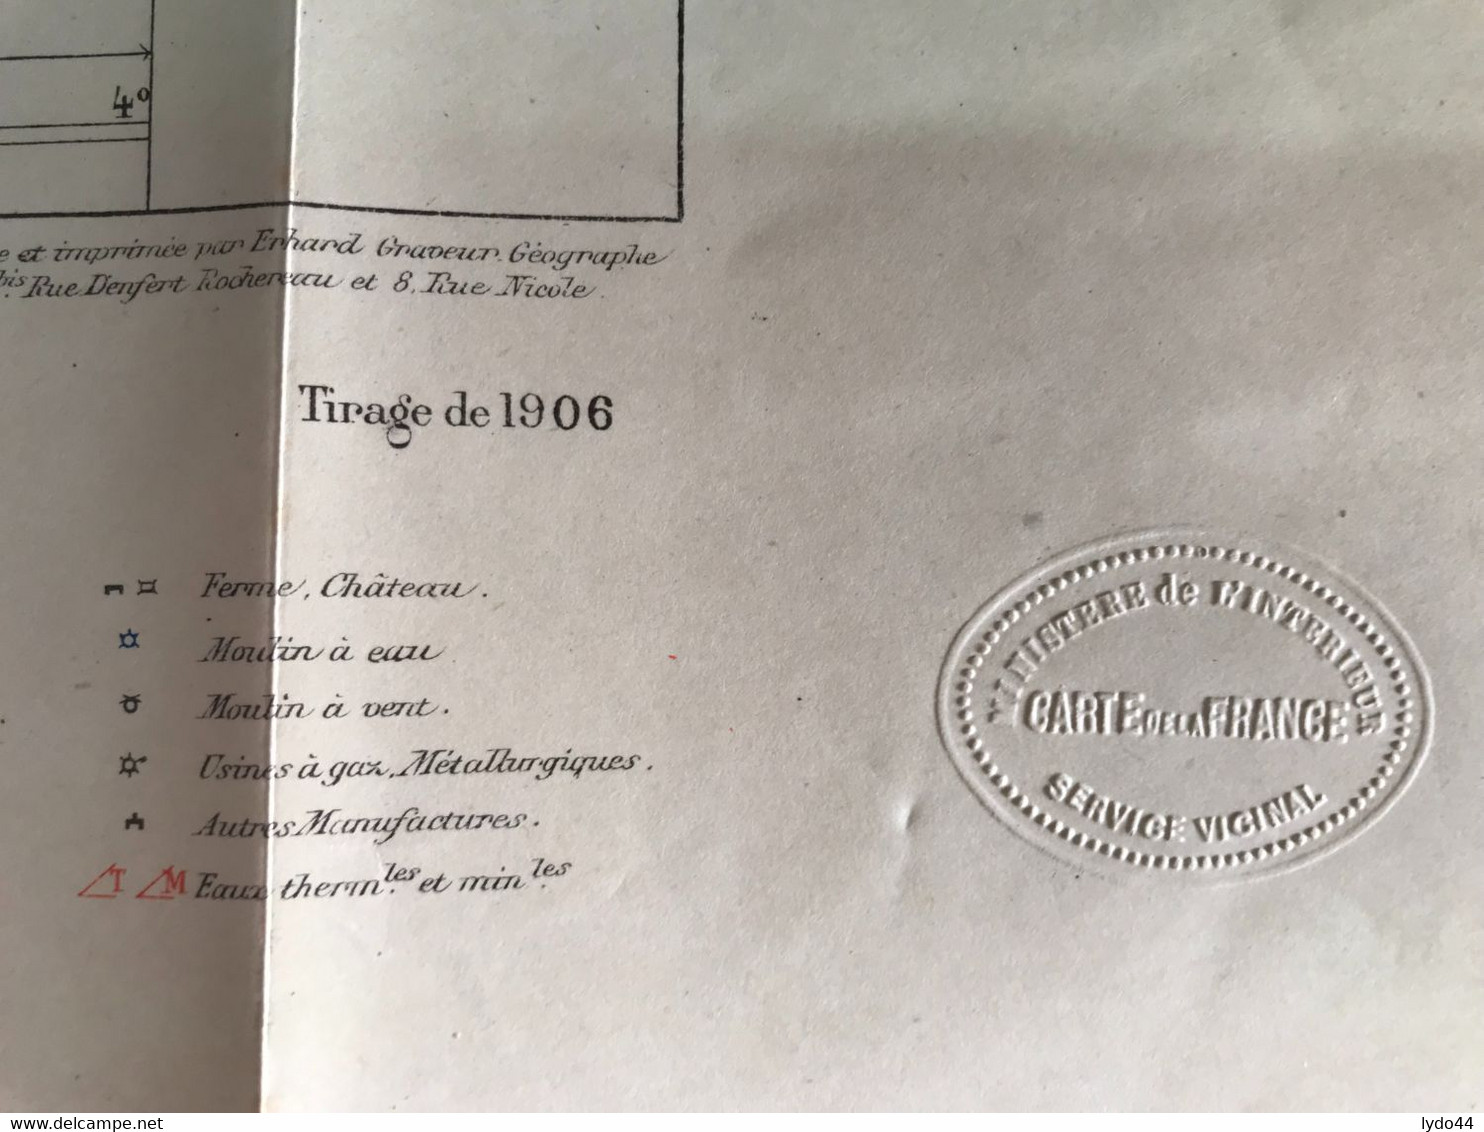 PONT A MOUSSON ,  Carte 1/100.000 , Ministère De L'Intérieur , Maj Juin 1895 ,  Tirage De 1906 , Service Vicinal - Cartes Routières